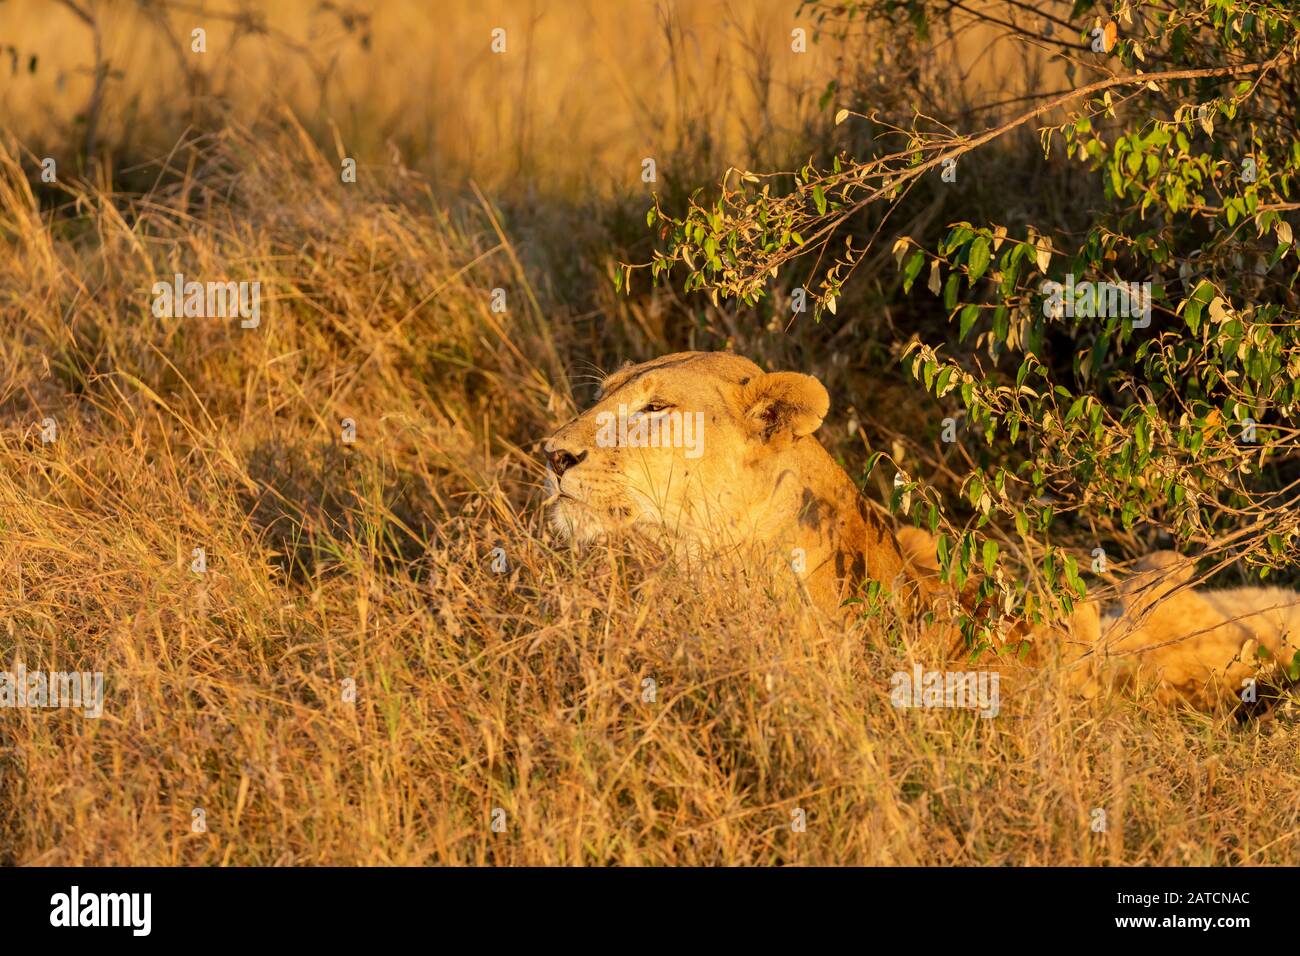 Lion africain (Panthera leo) féminin en alerte sur la savane à Mara North Conservancy, Kenya Banque D'Images